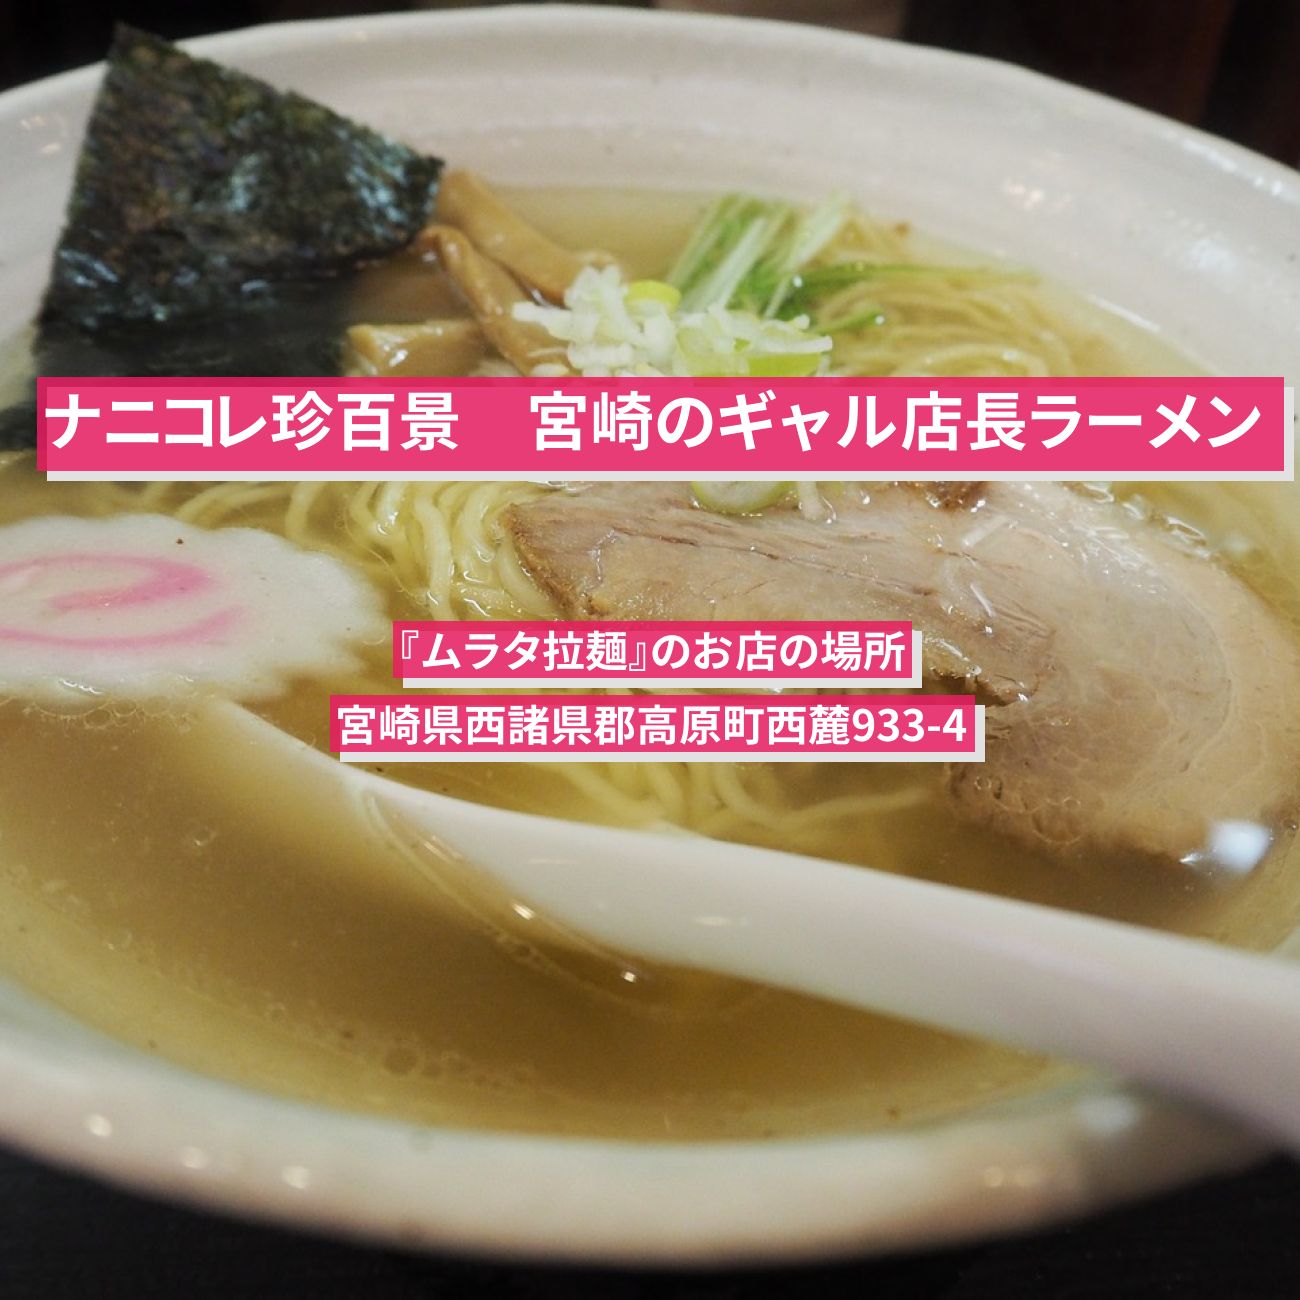 【ナニコレ珍百景】宮崎のギャル店長ラーメン『ムラタ拉麺』のお店の場所